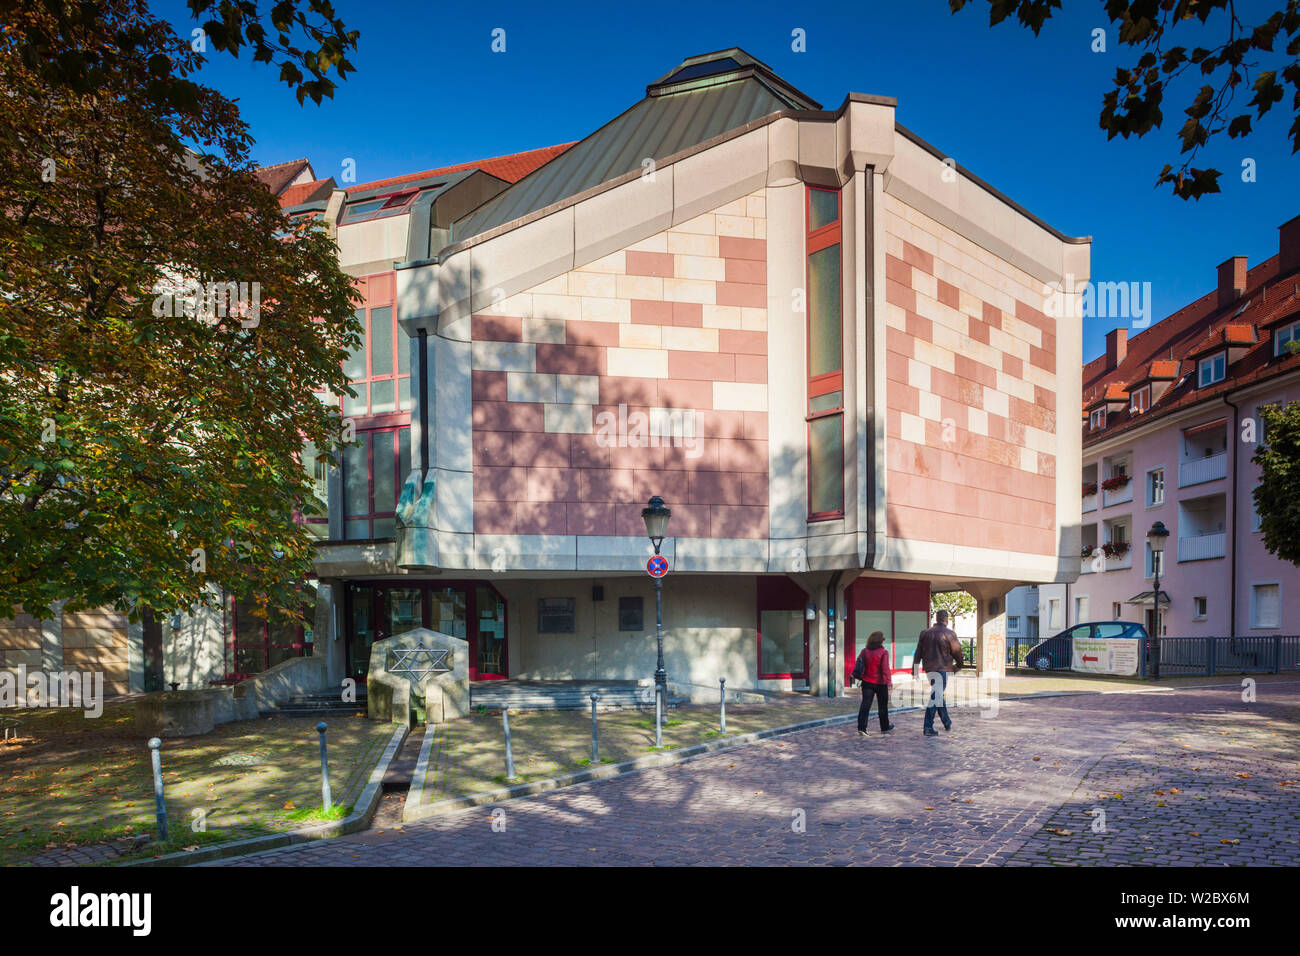 Germany, Baden-Wurttemburg, Black Forest, Freiburg-im-Breisgau, Altstadt, Old Town, new synagogue Stock Photo